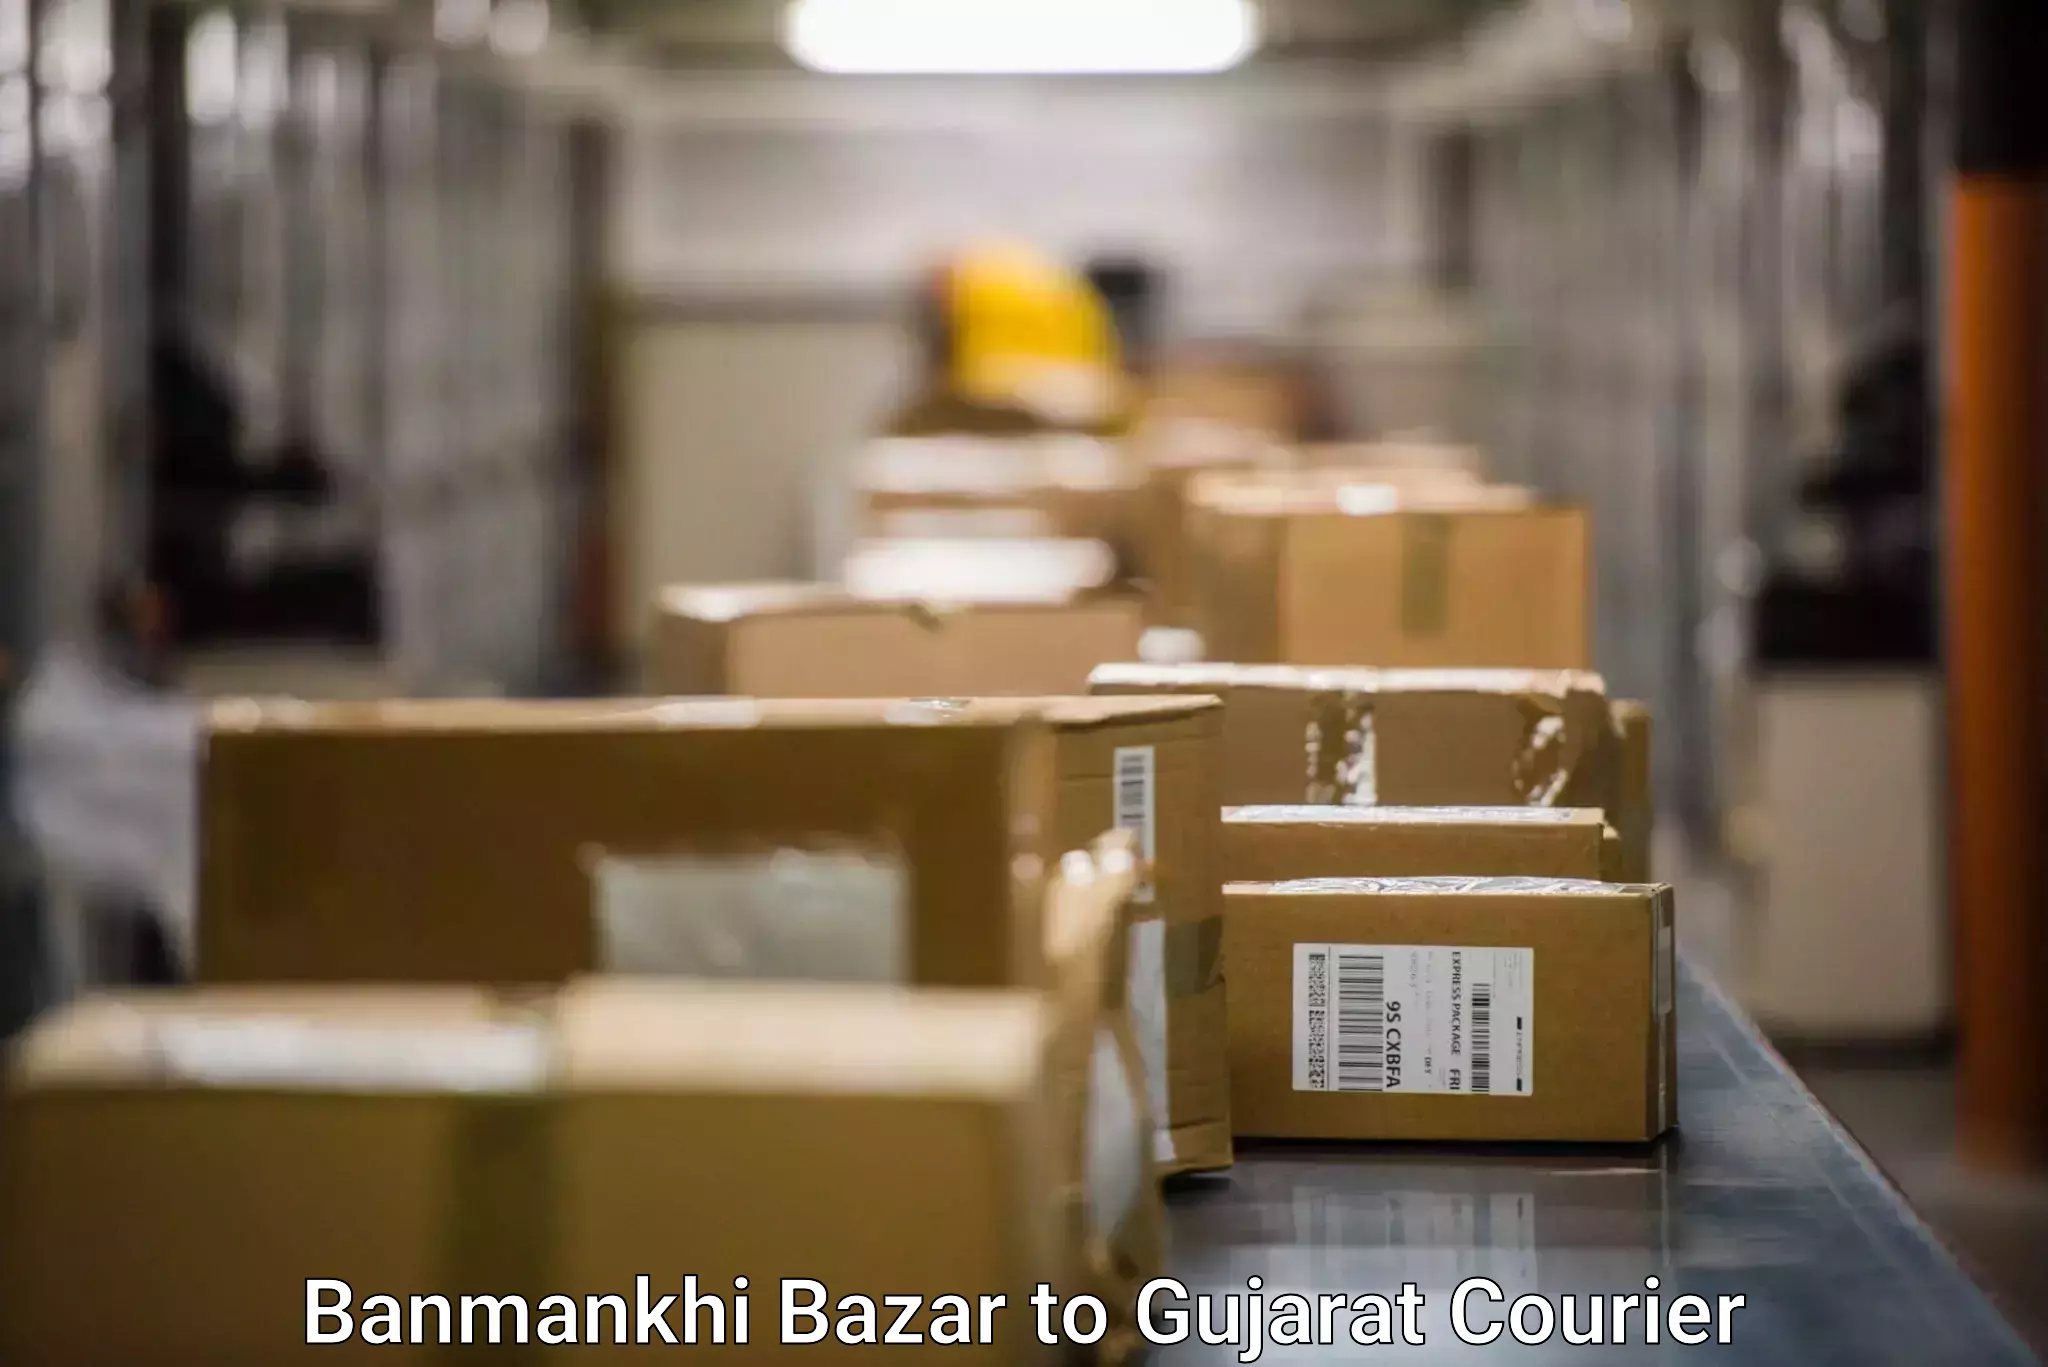 Door-to-door freight service Banmankhi Bazar to Surat